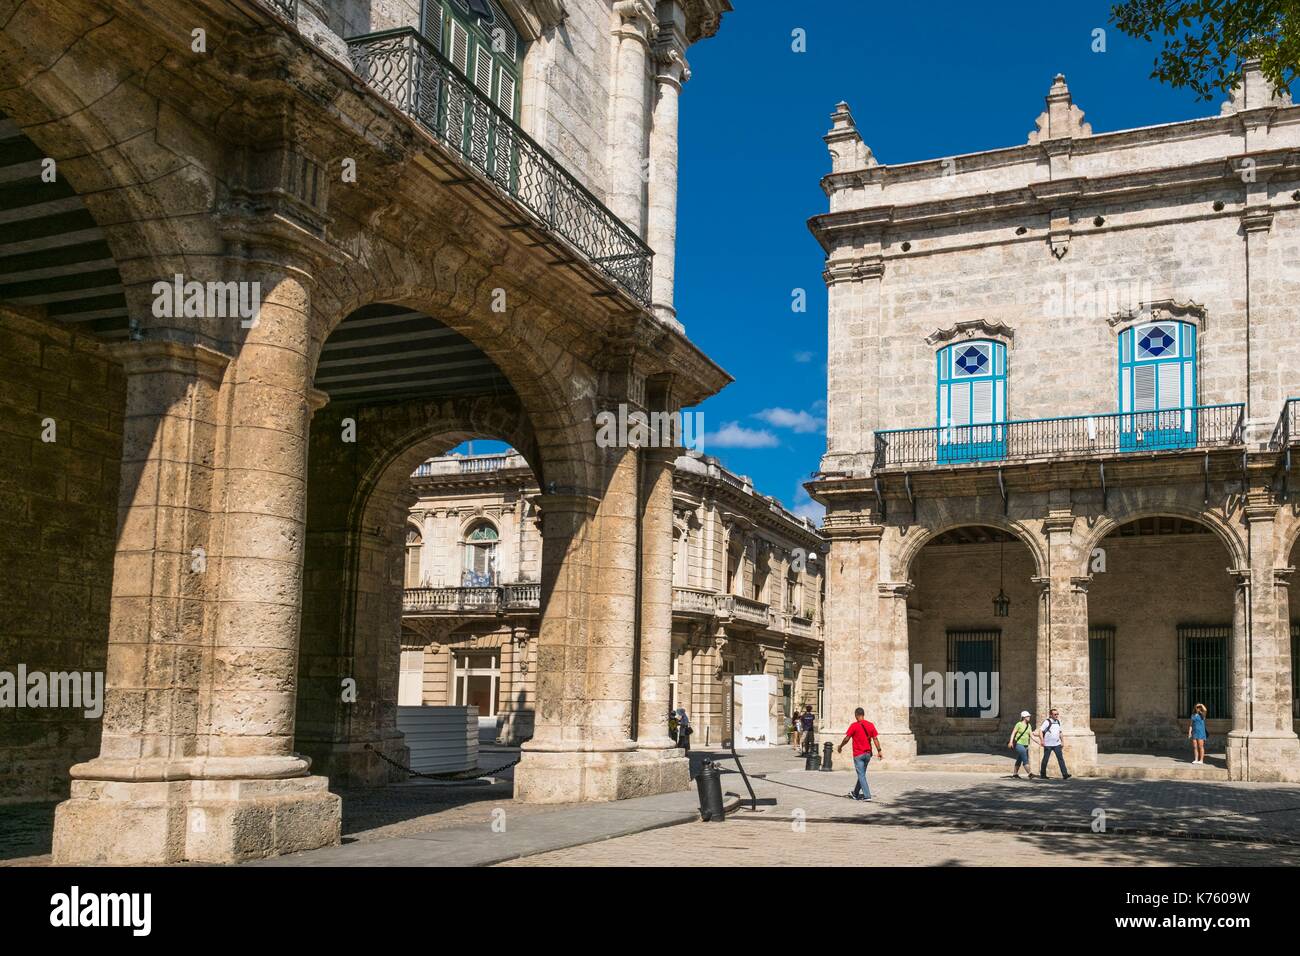 Cuba, La Habana, Habana Vieja distretto (Patrimonio Mondiale dell'UNESCO), plaza de Armas, Palacio de los Capitanes Generales e Palacio del Segundo Cabo, barocco del XVIII secolo palazzi che ospitano rispettivamente il Museo de la Ciudad e un centro culturale Foto Stock